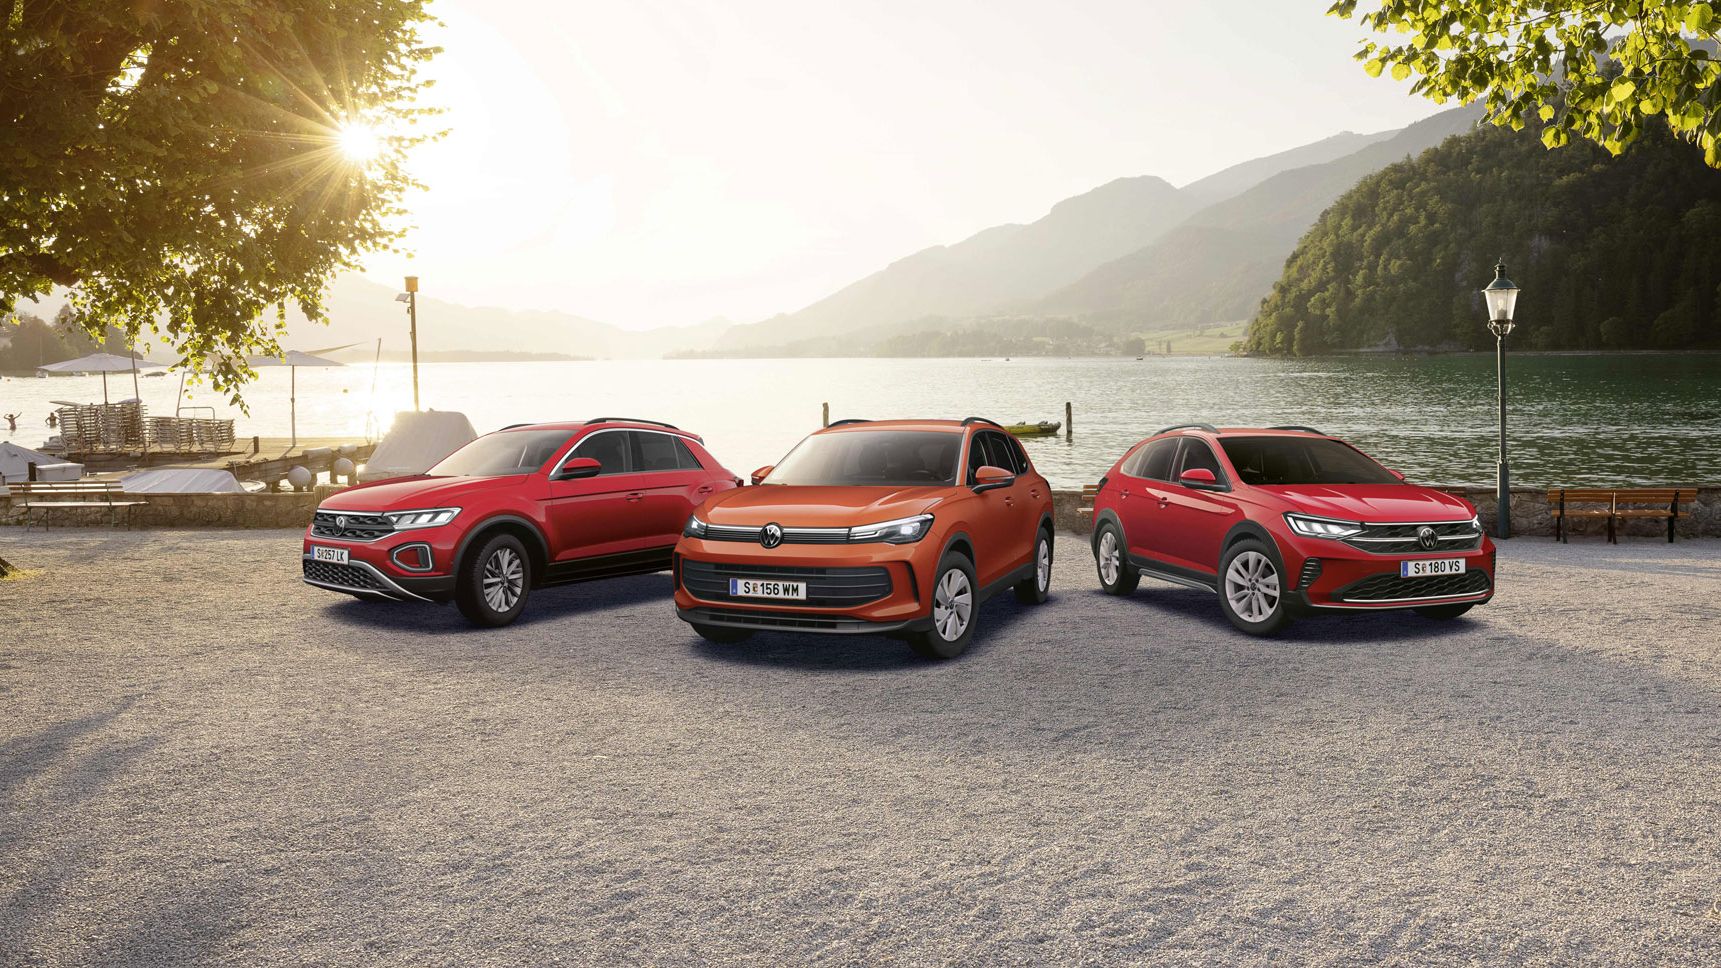 Die Volkswagen Friends Sondermodelle stehen geparkt vor den Wolfgangsee